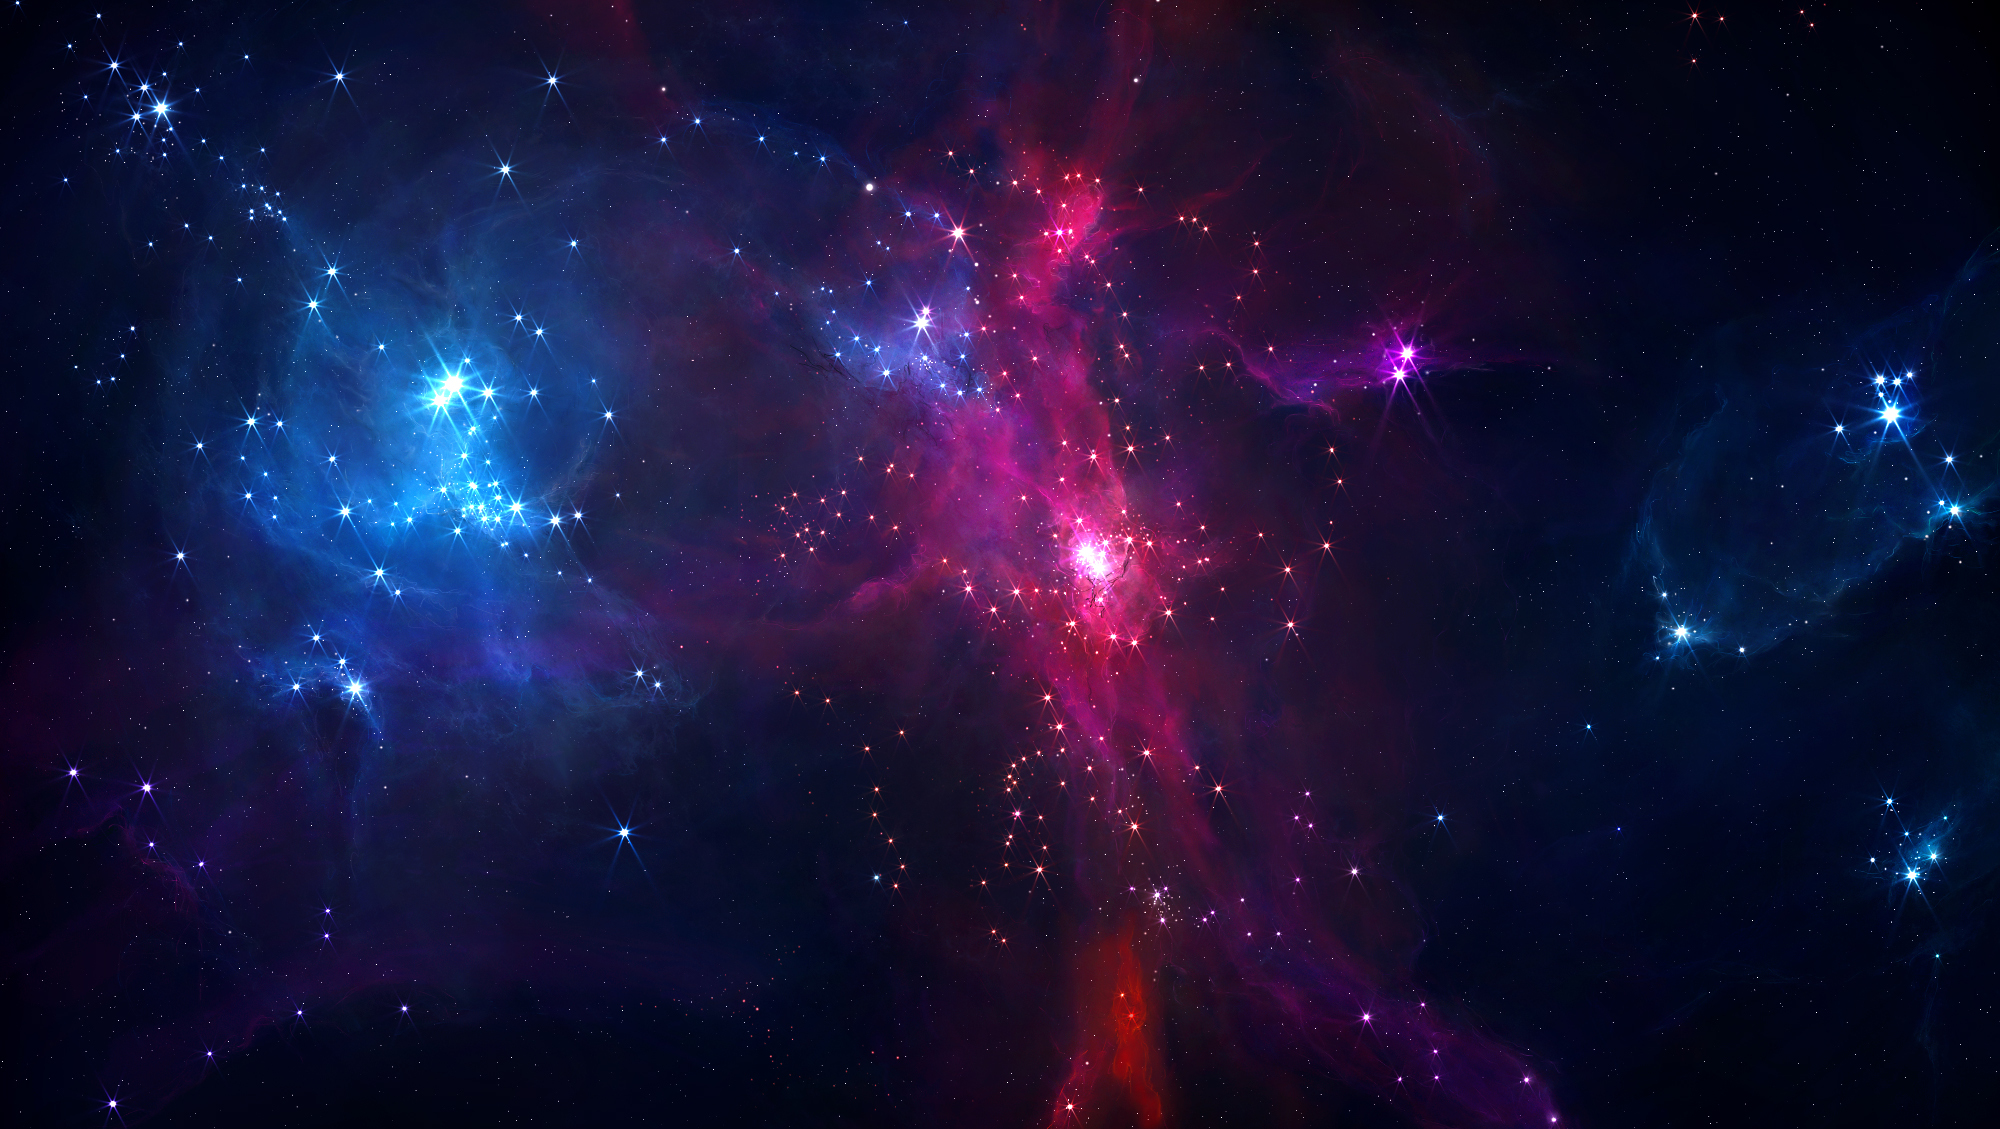 Обои туманность звезды космос картинки на рабочий стол на тему Космос - скачать скачать